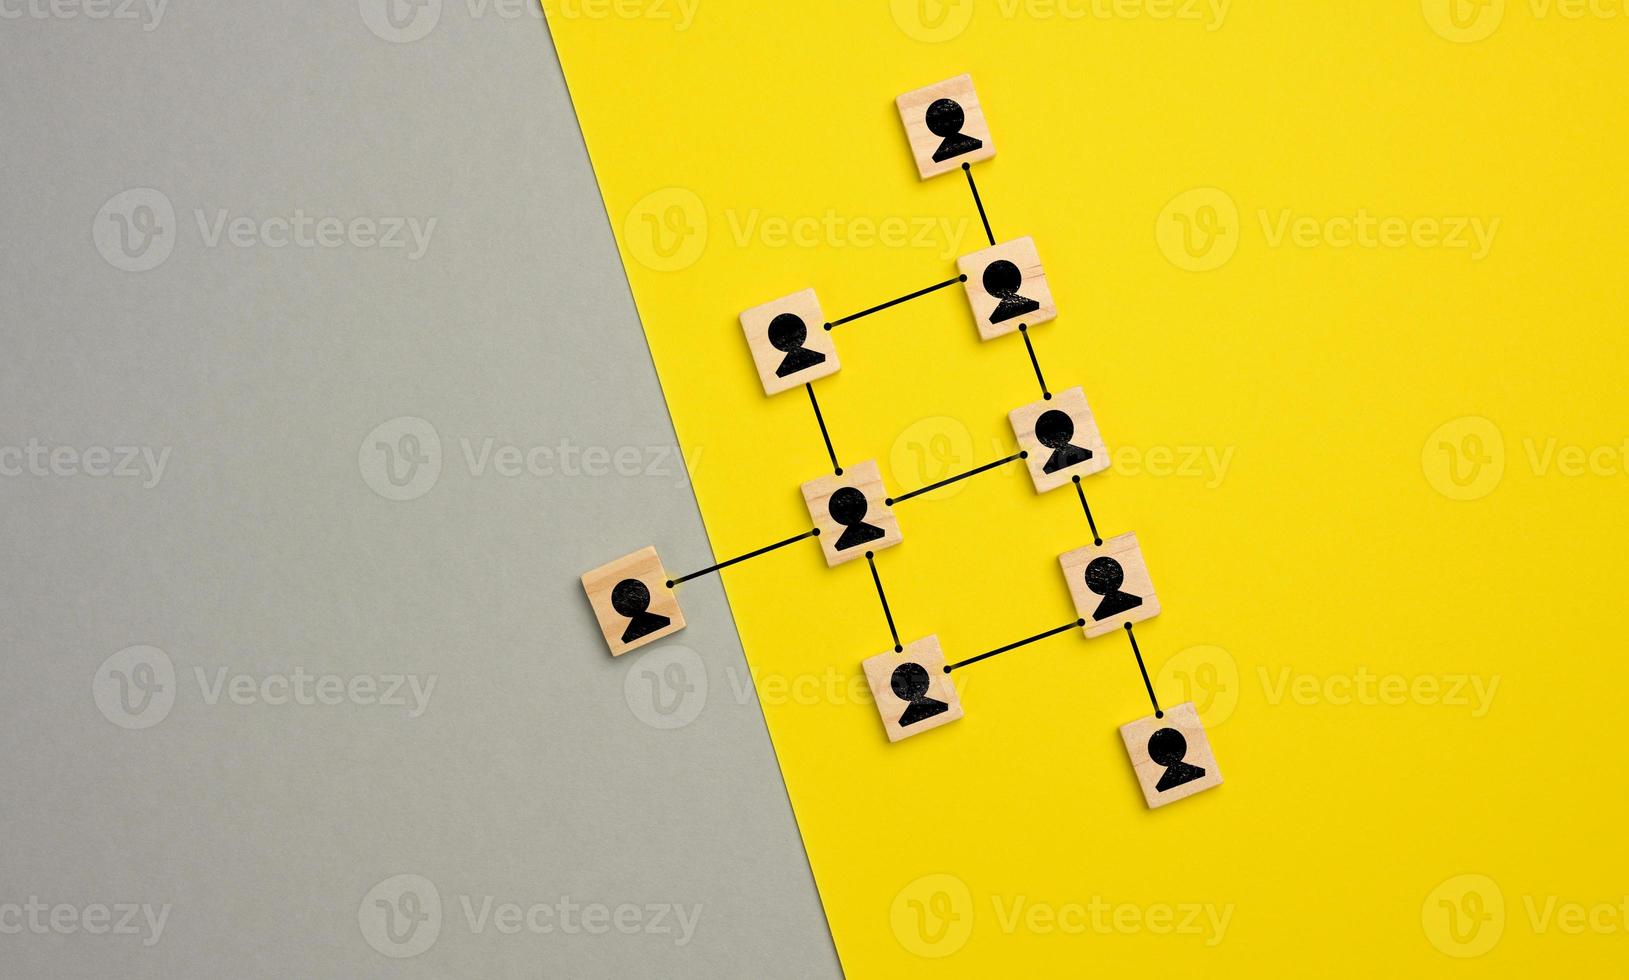 bloques de madera con figuras sobre un fondo amarillo gris, estructura organizativa jerárquica de gestión foto